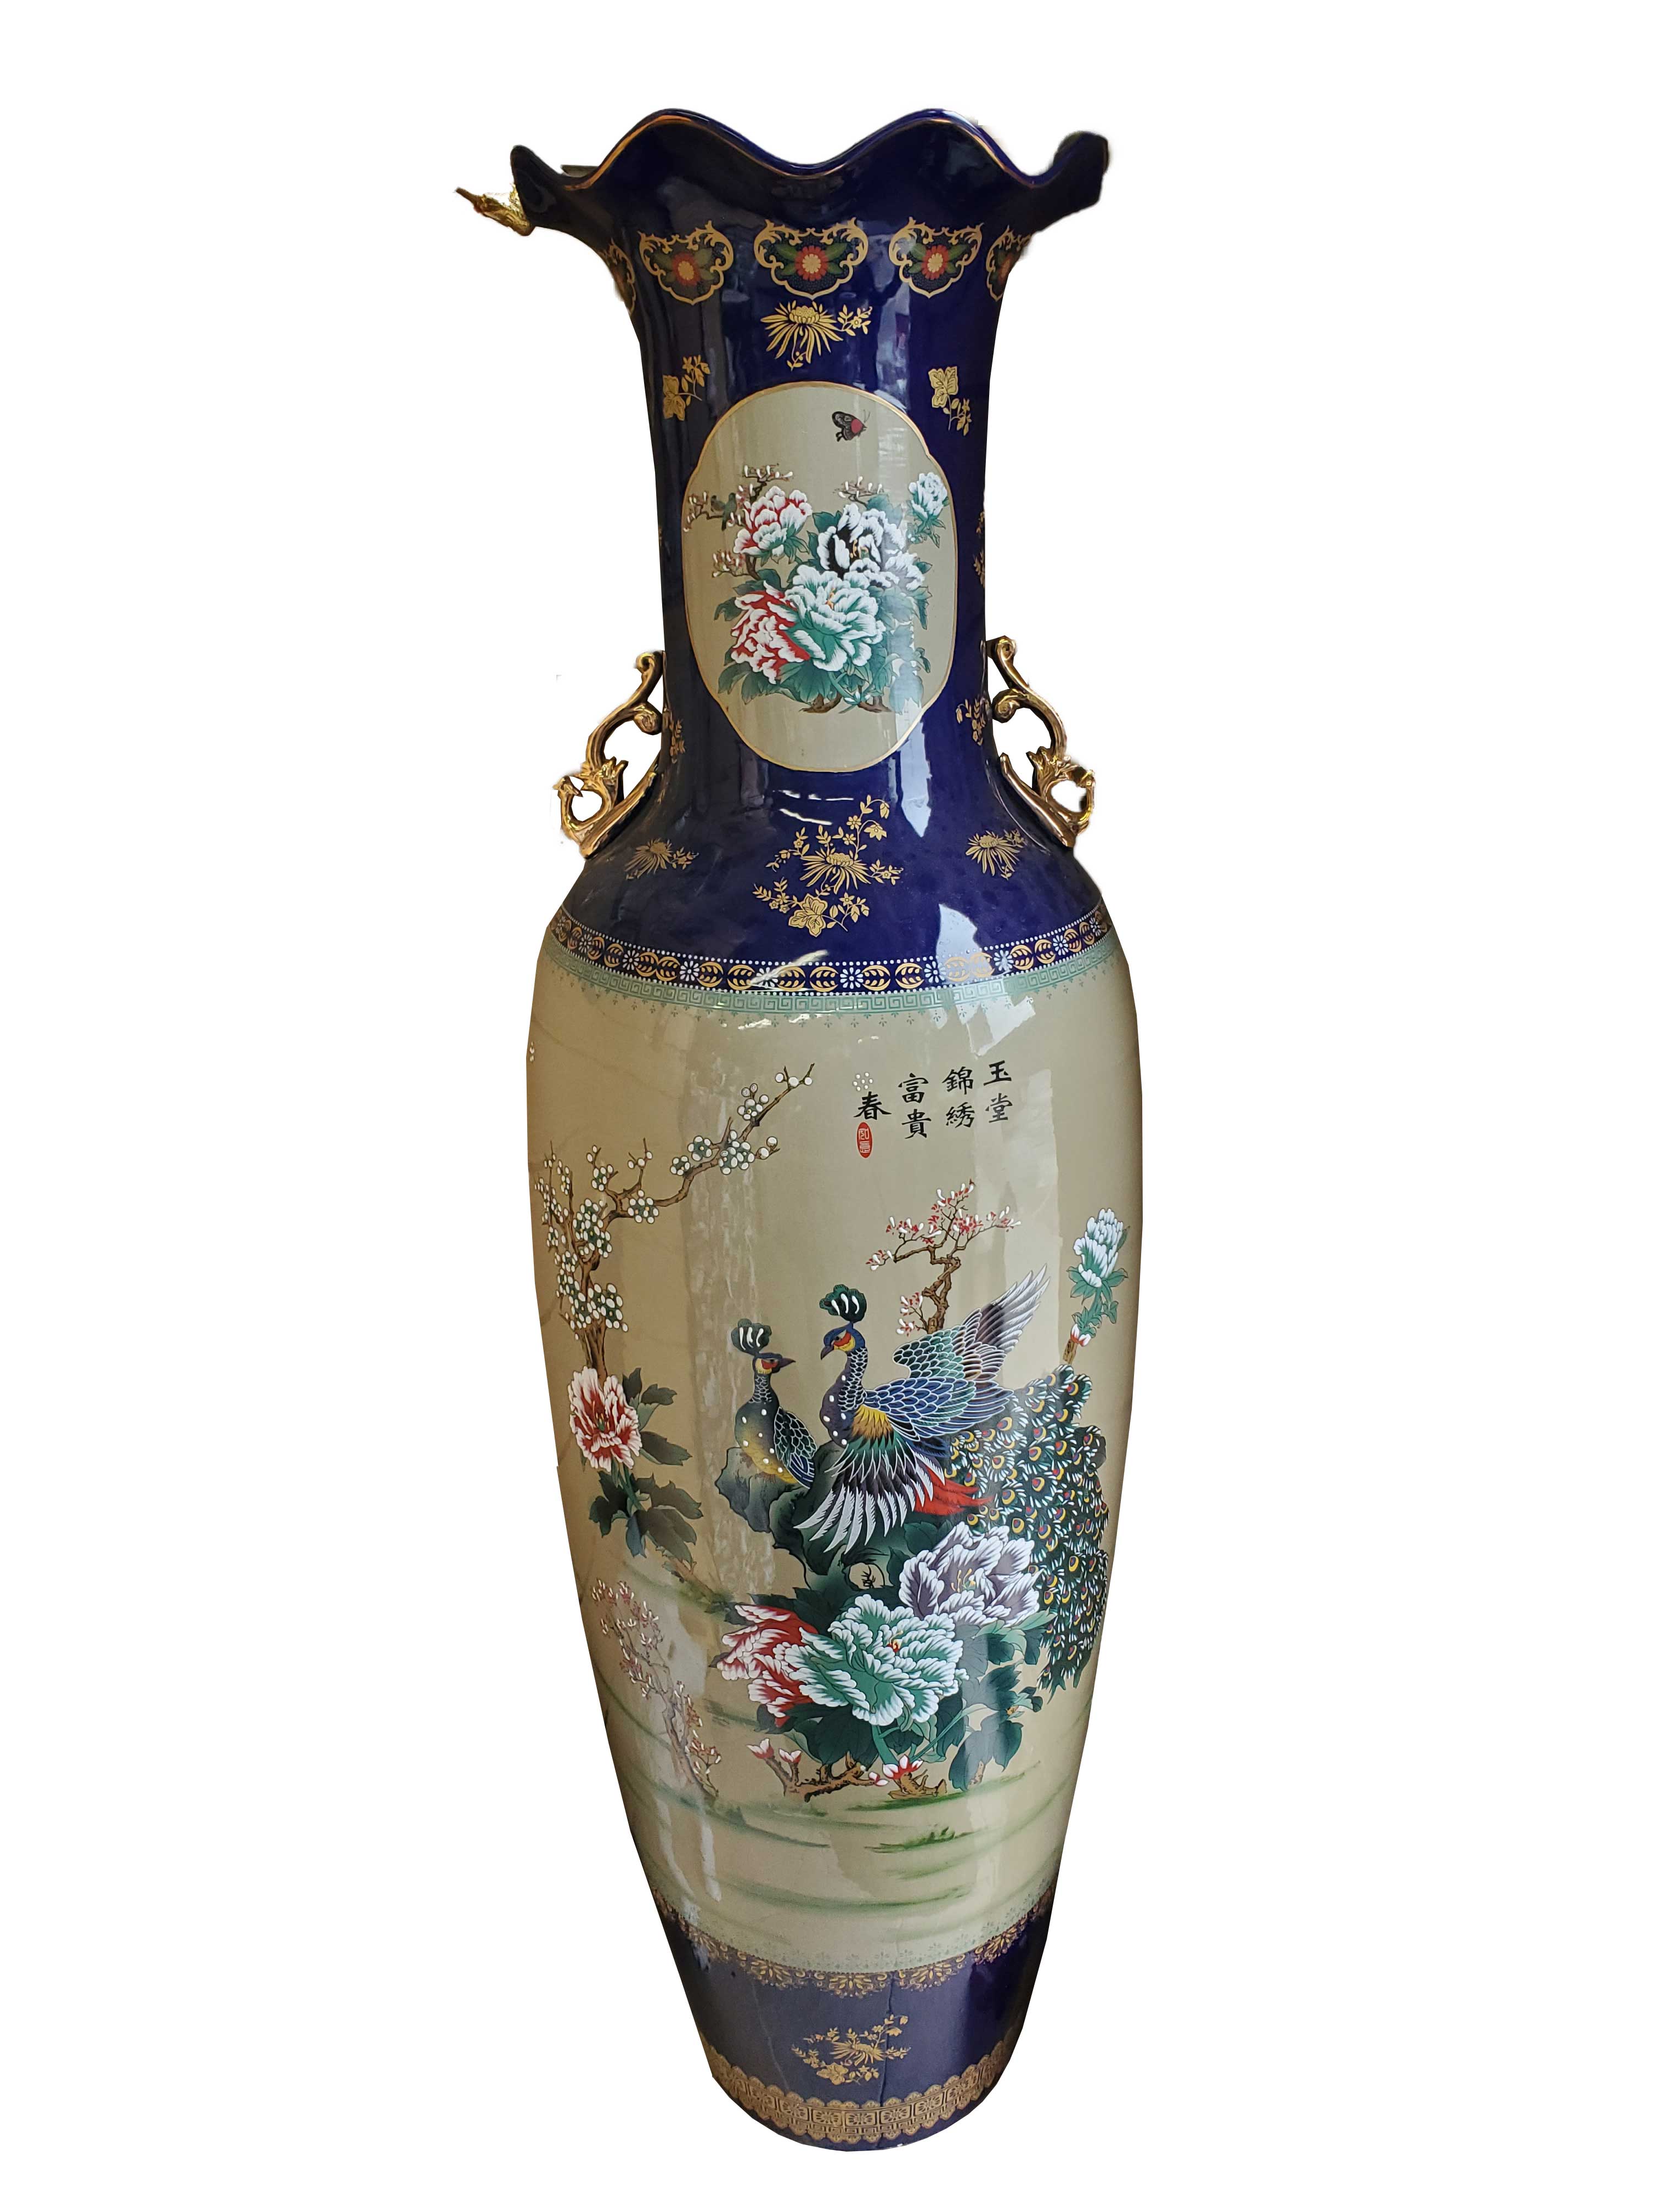 Cobalt Peacock Porcelain Vase 62"tall 17"diameter - Royal Gift